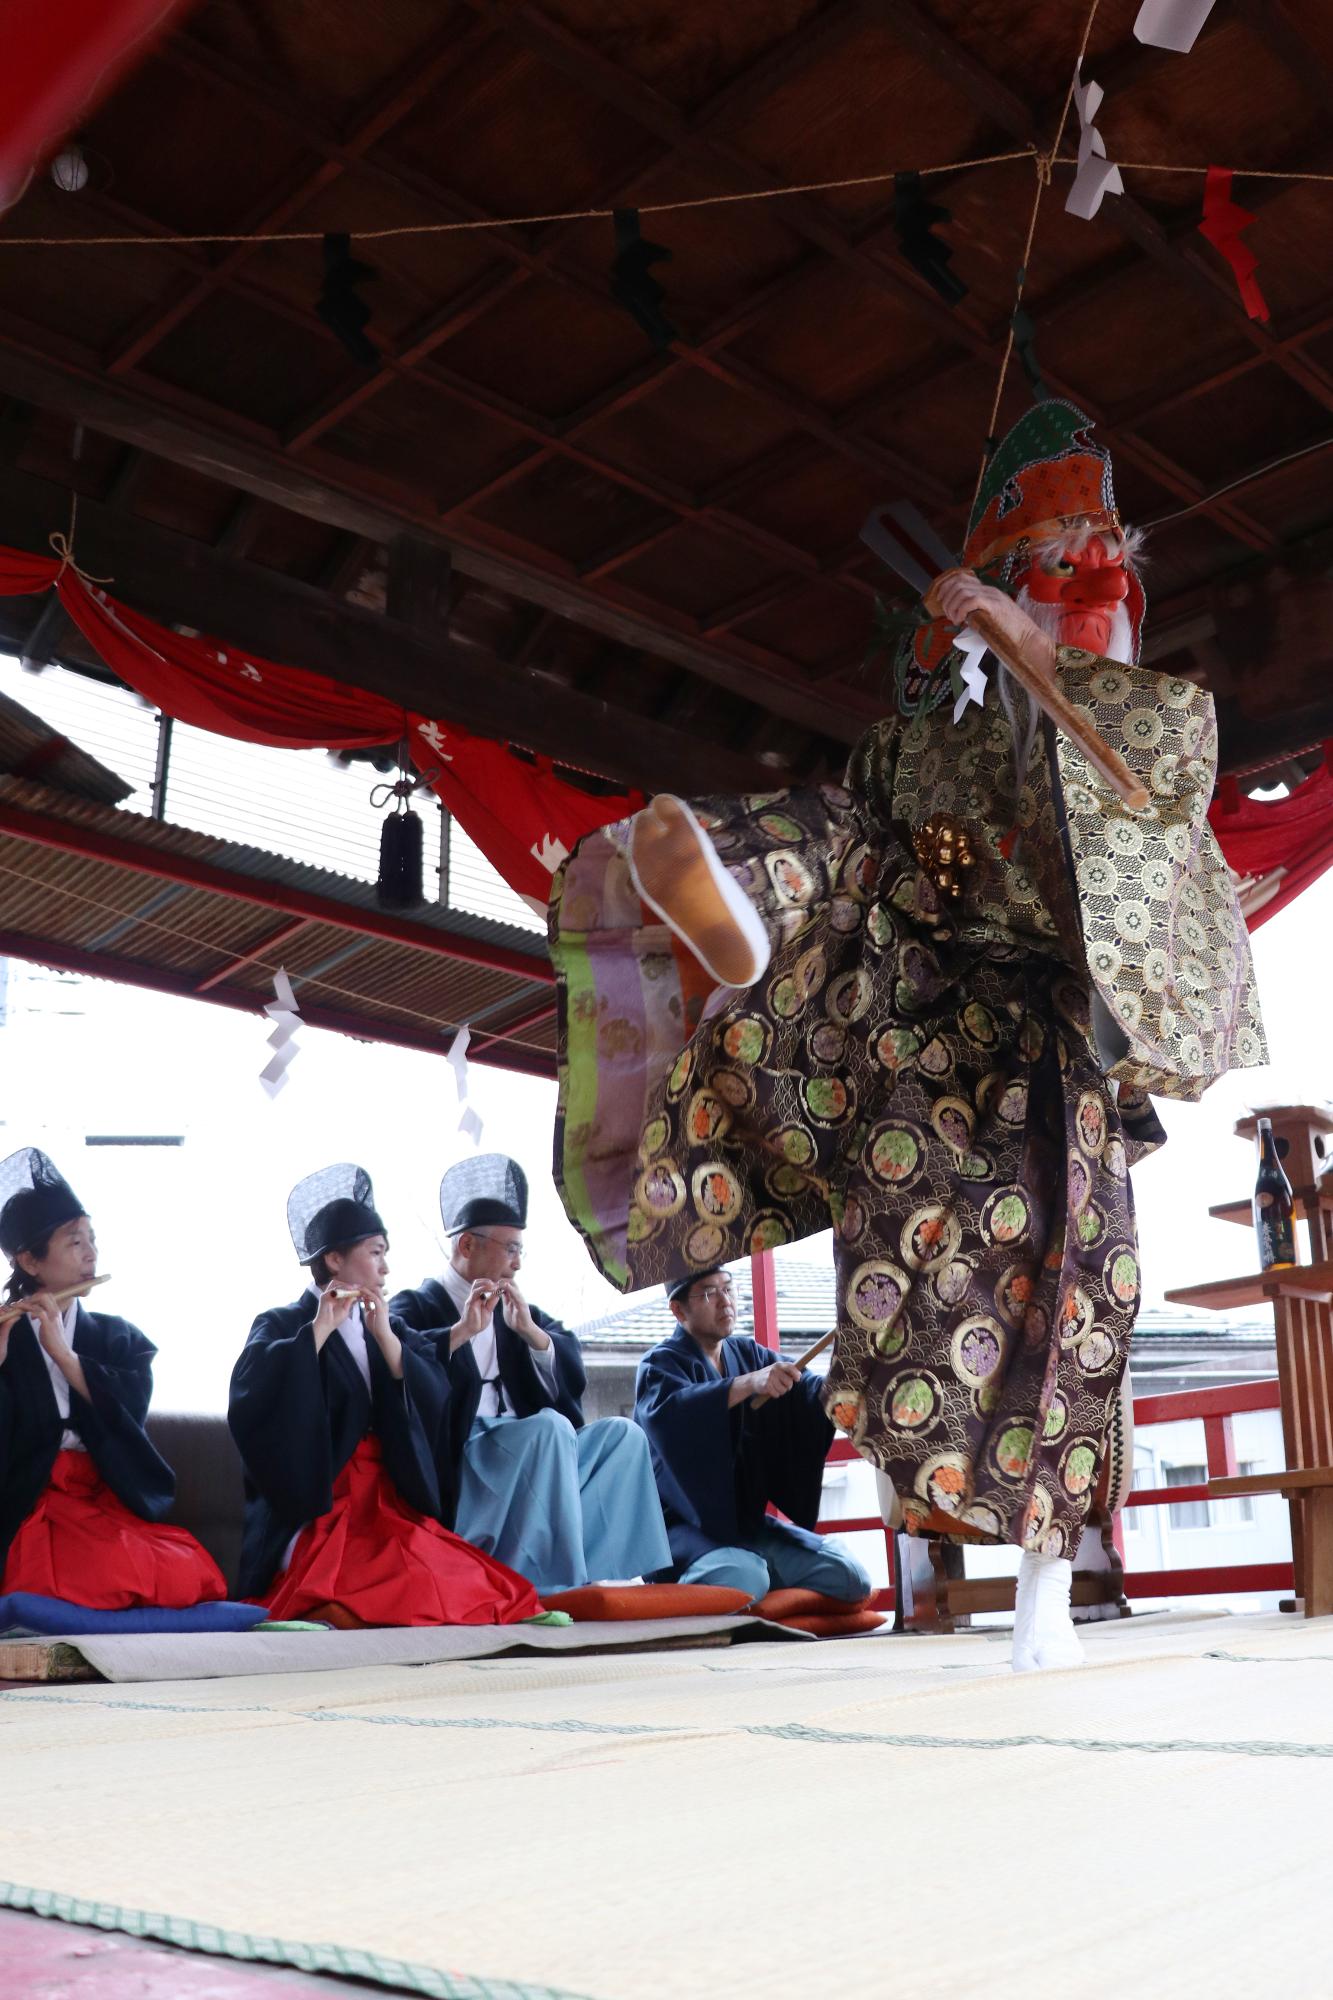 赤坂稲荷神社初午祭り